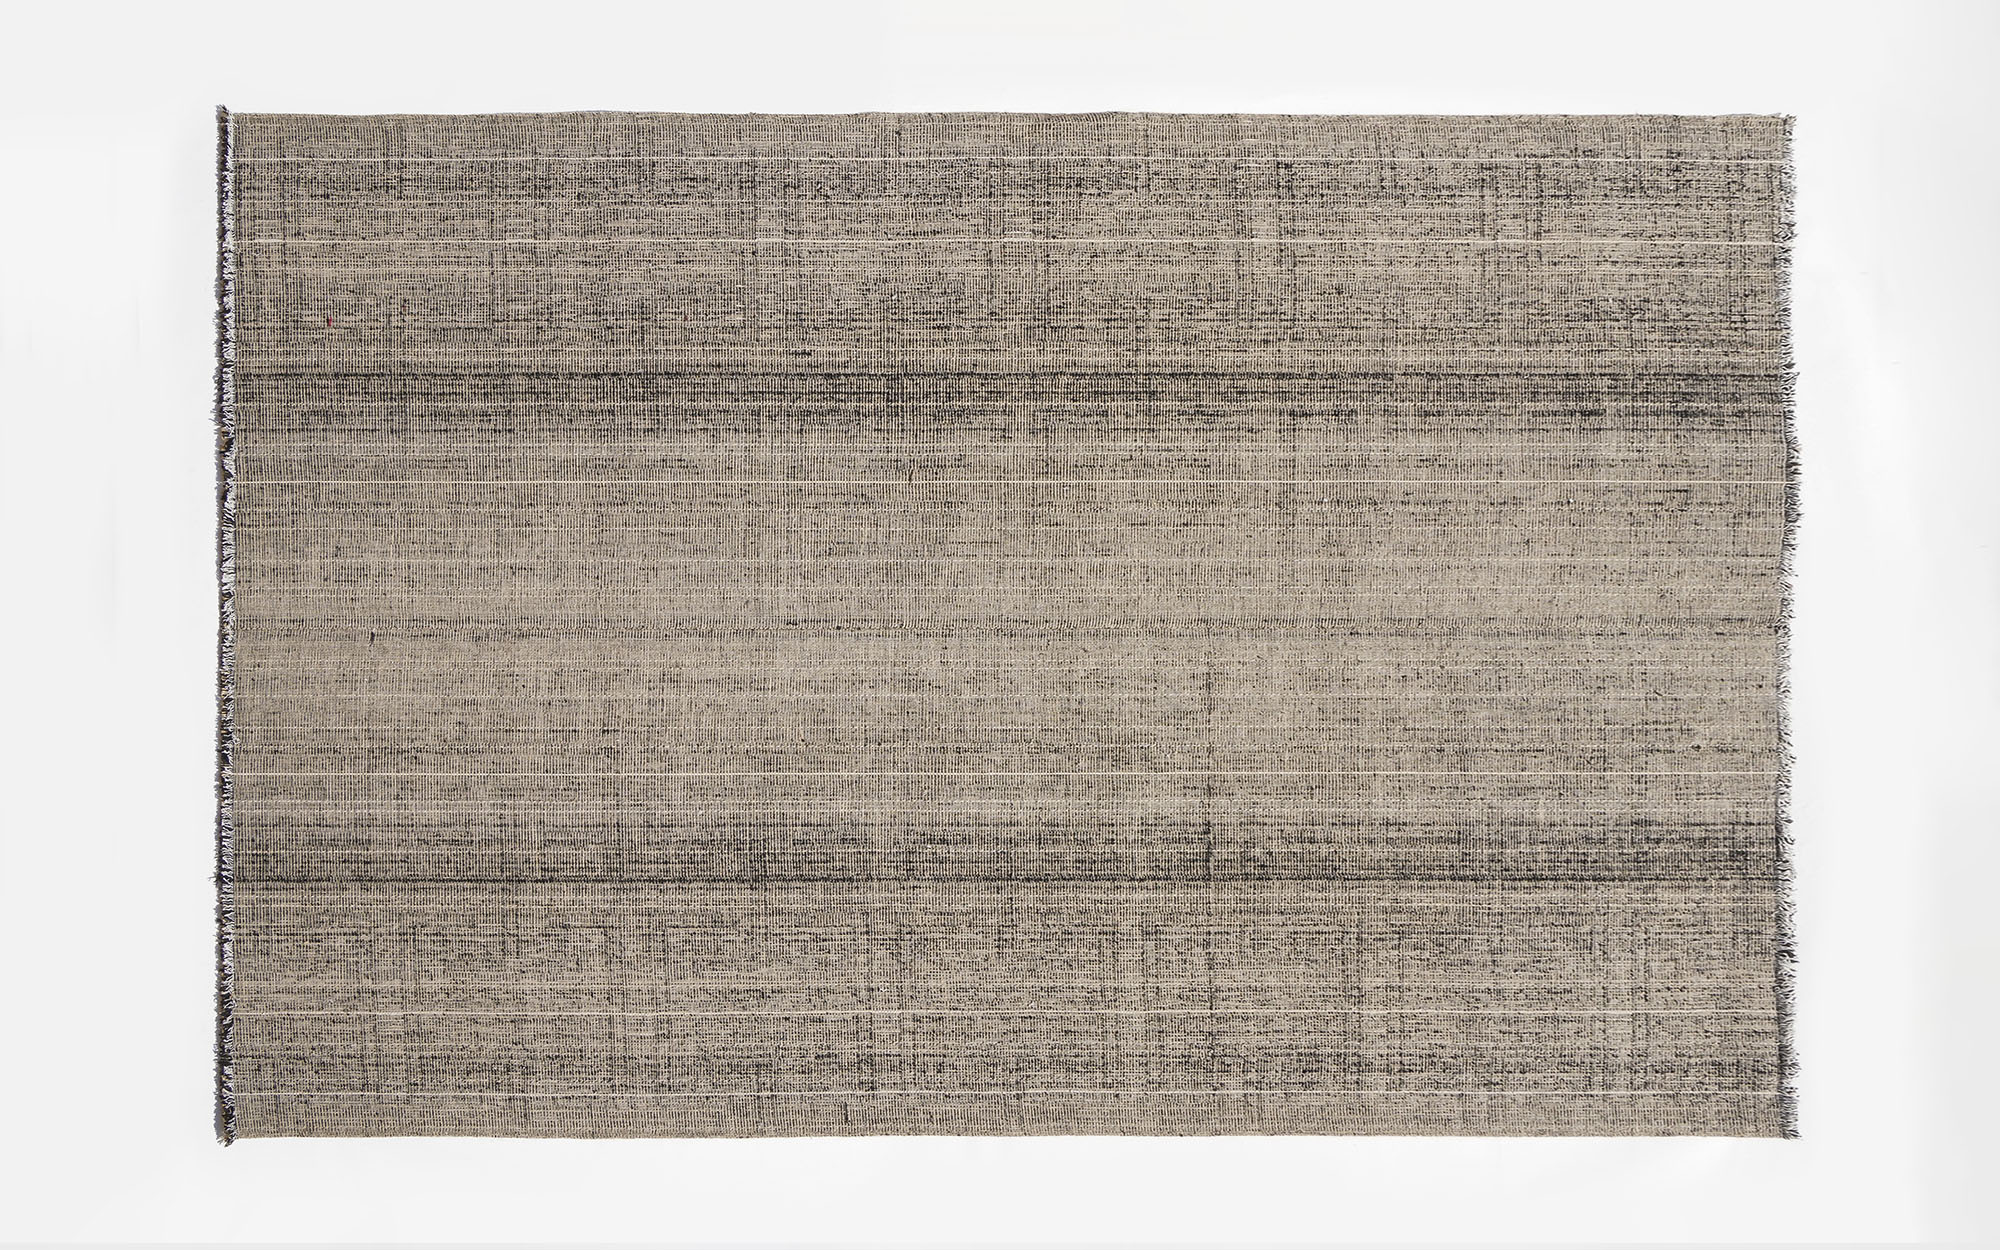 Wilton Carpet M - Ronan & Erwan Bouroullec - Seating - Galerie kreo